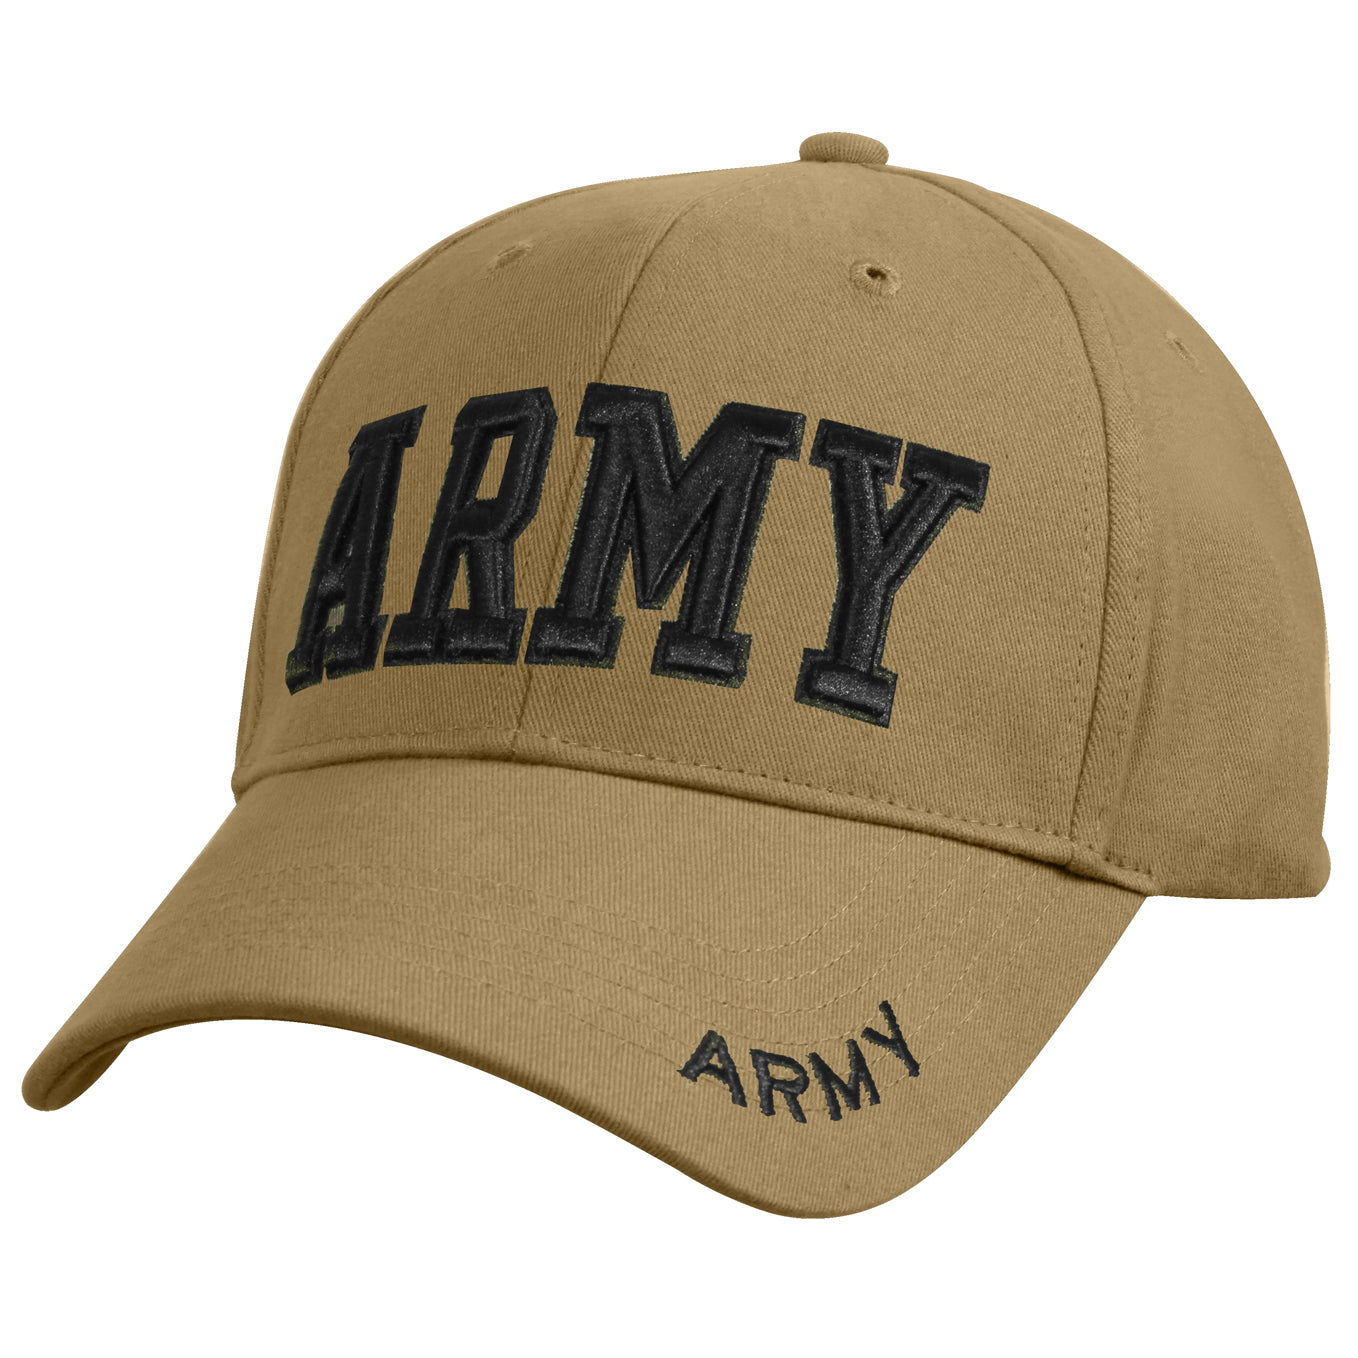 帽Headwear | 軍系風穿搭必備| 軍用品及戶外戰術用品專門店| 3army